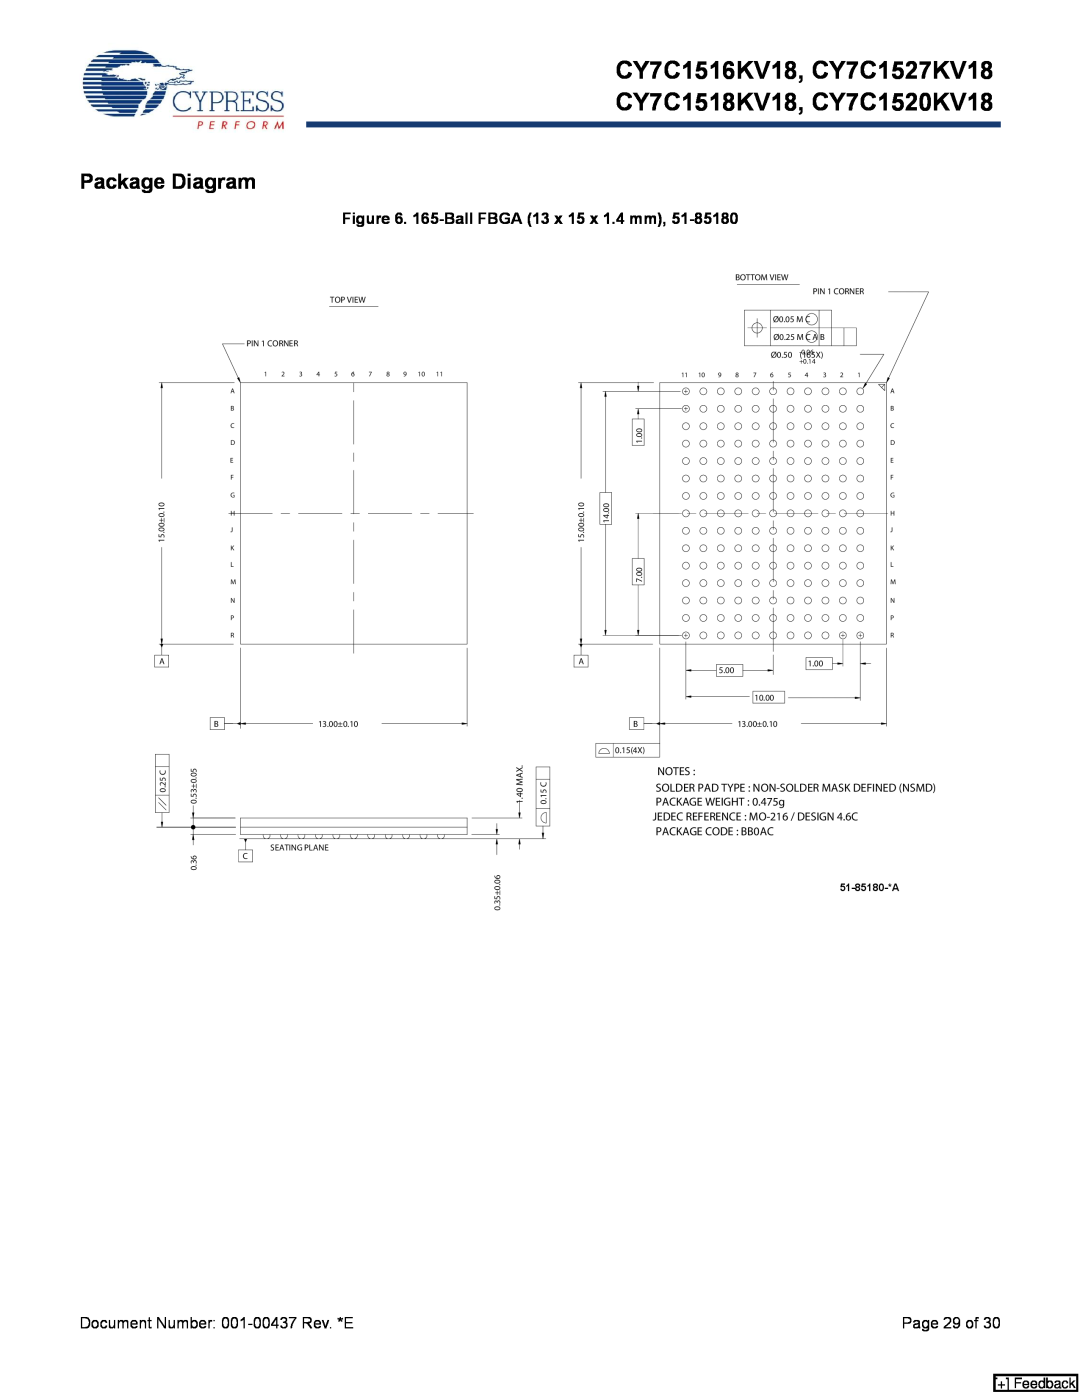 Cypress manual Package Diagram, CY7C1516KV18, CY7C1527KV18 CY7C1518KV18, CY7C1520KV18, 165-Ball FBGA 13 x 15 x 1.4 mm 